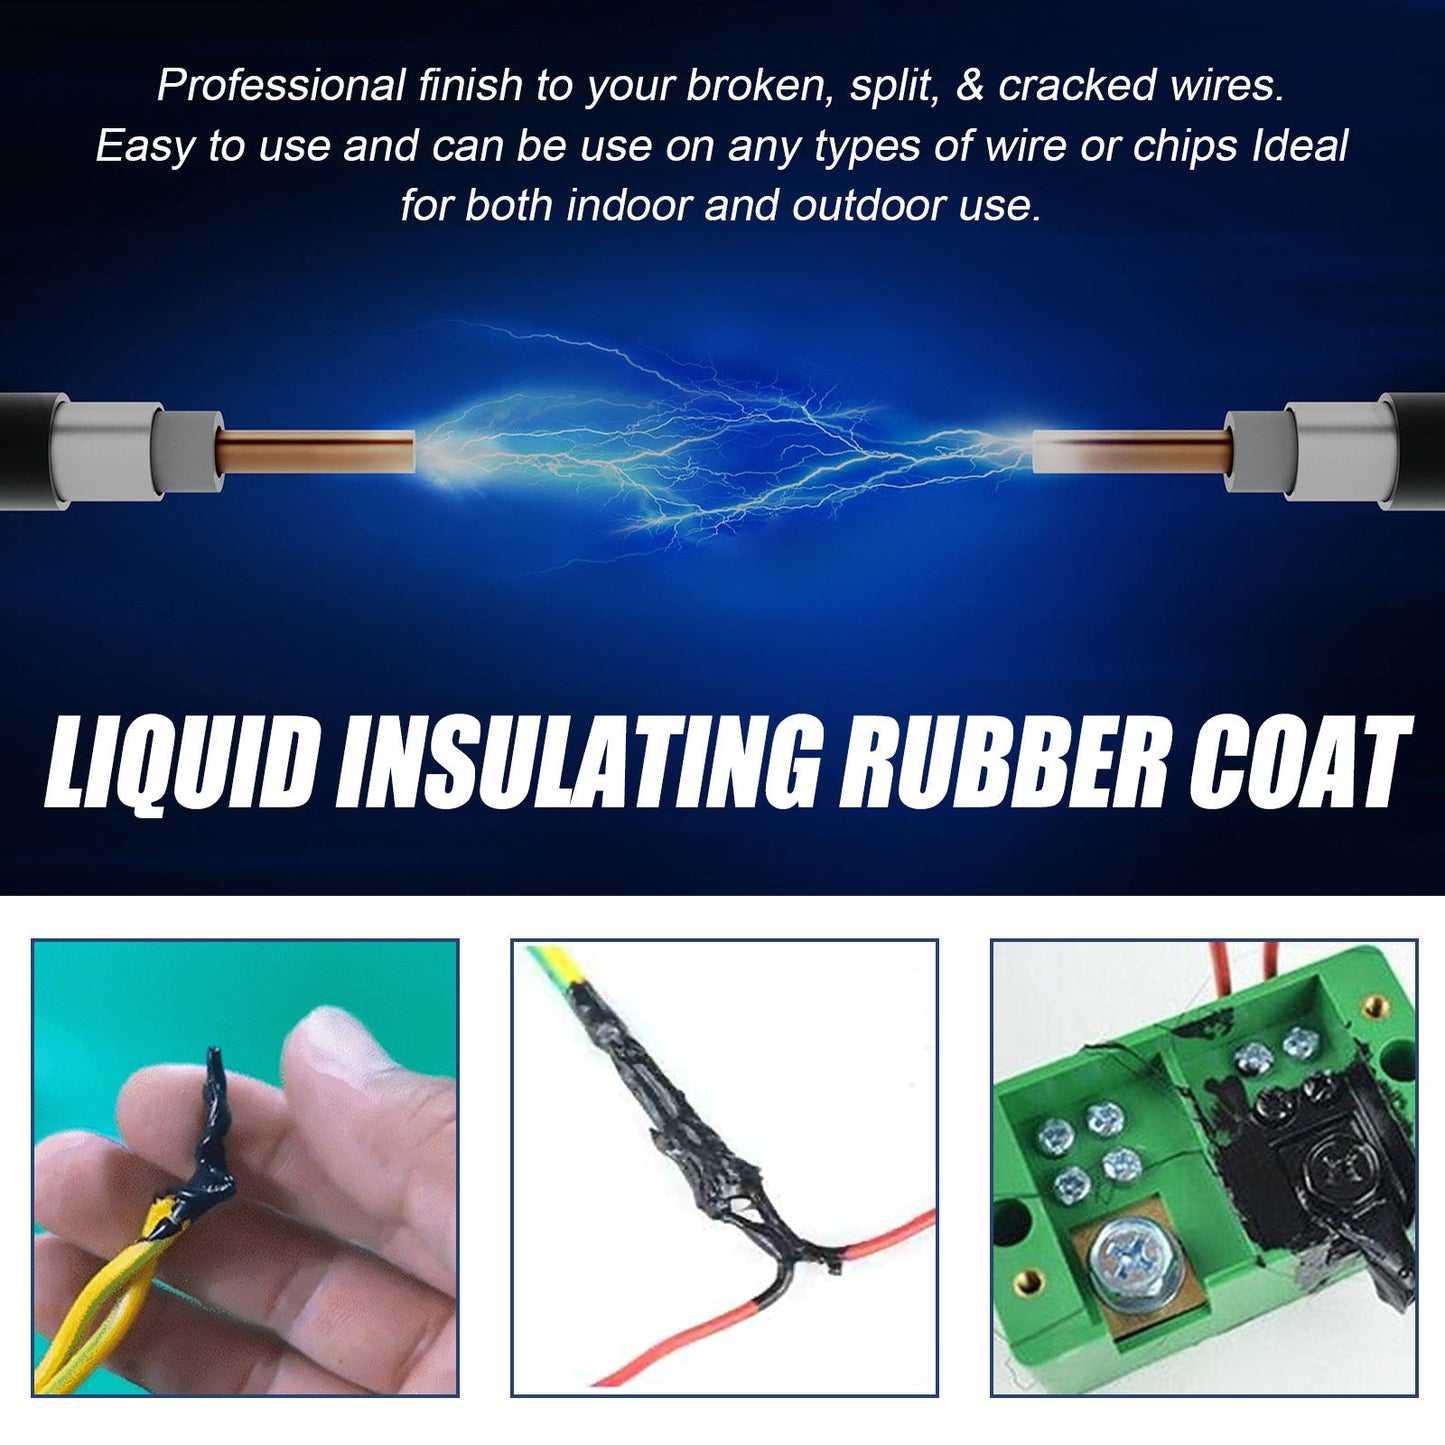 Pâte isolante liquide pour réparation de câbles électriques 🔌.